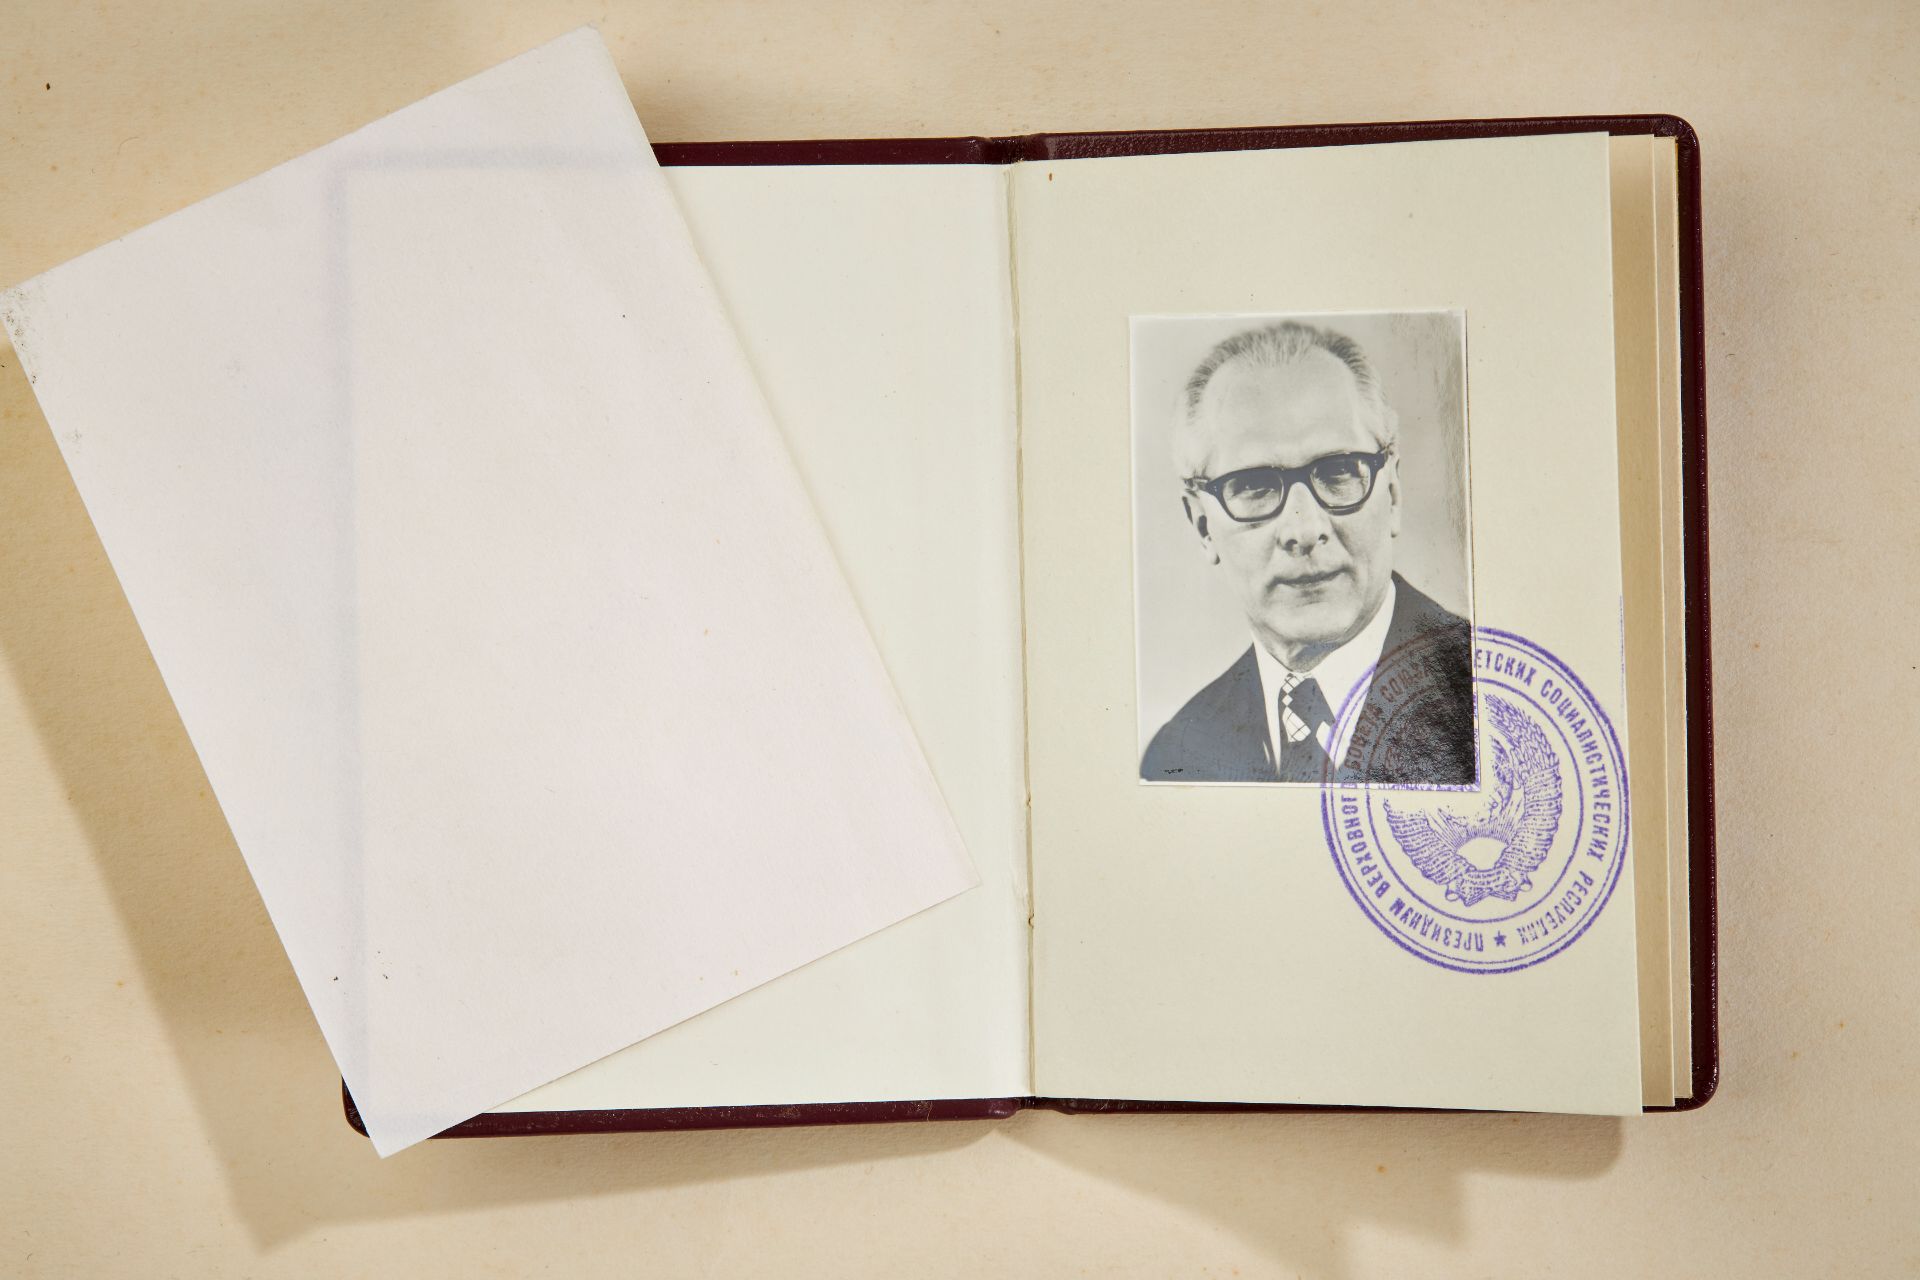 UDSSR: Ehrentitel Held der Sowjetunion verliehen an Erich Honecker - Bild 7 aus 8